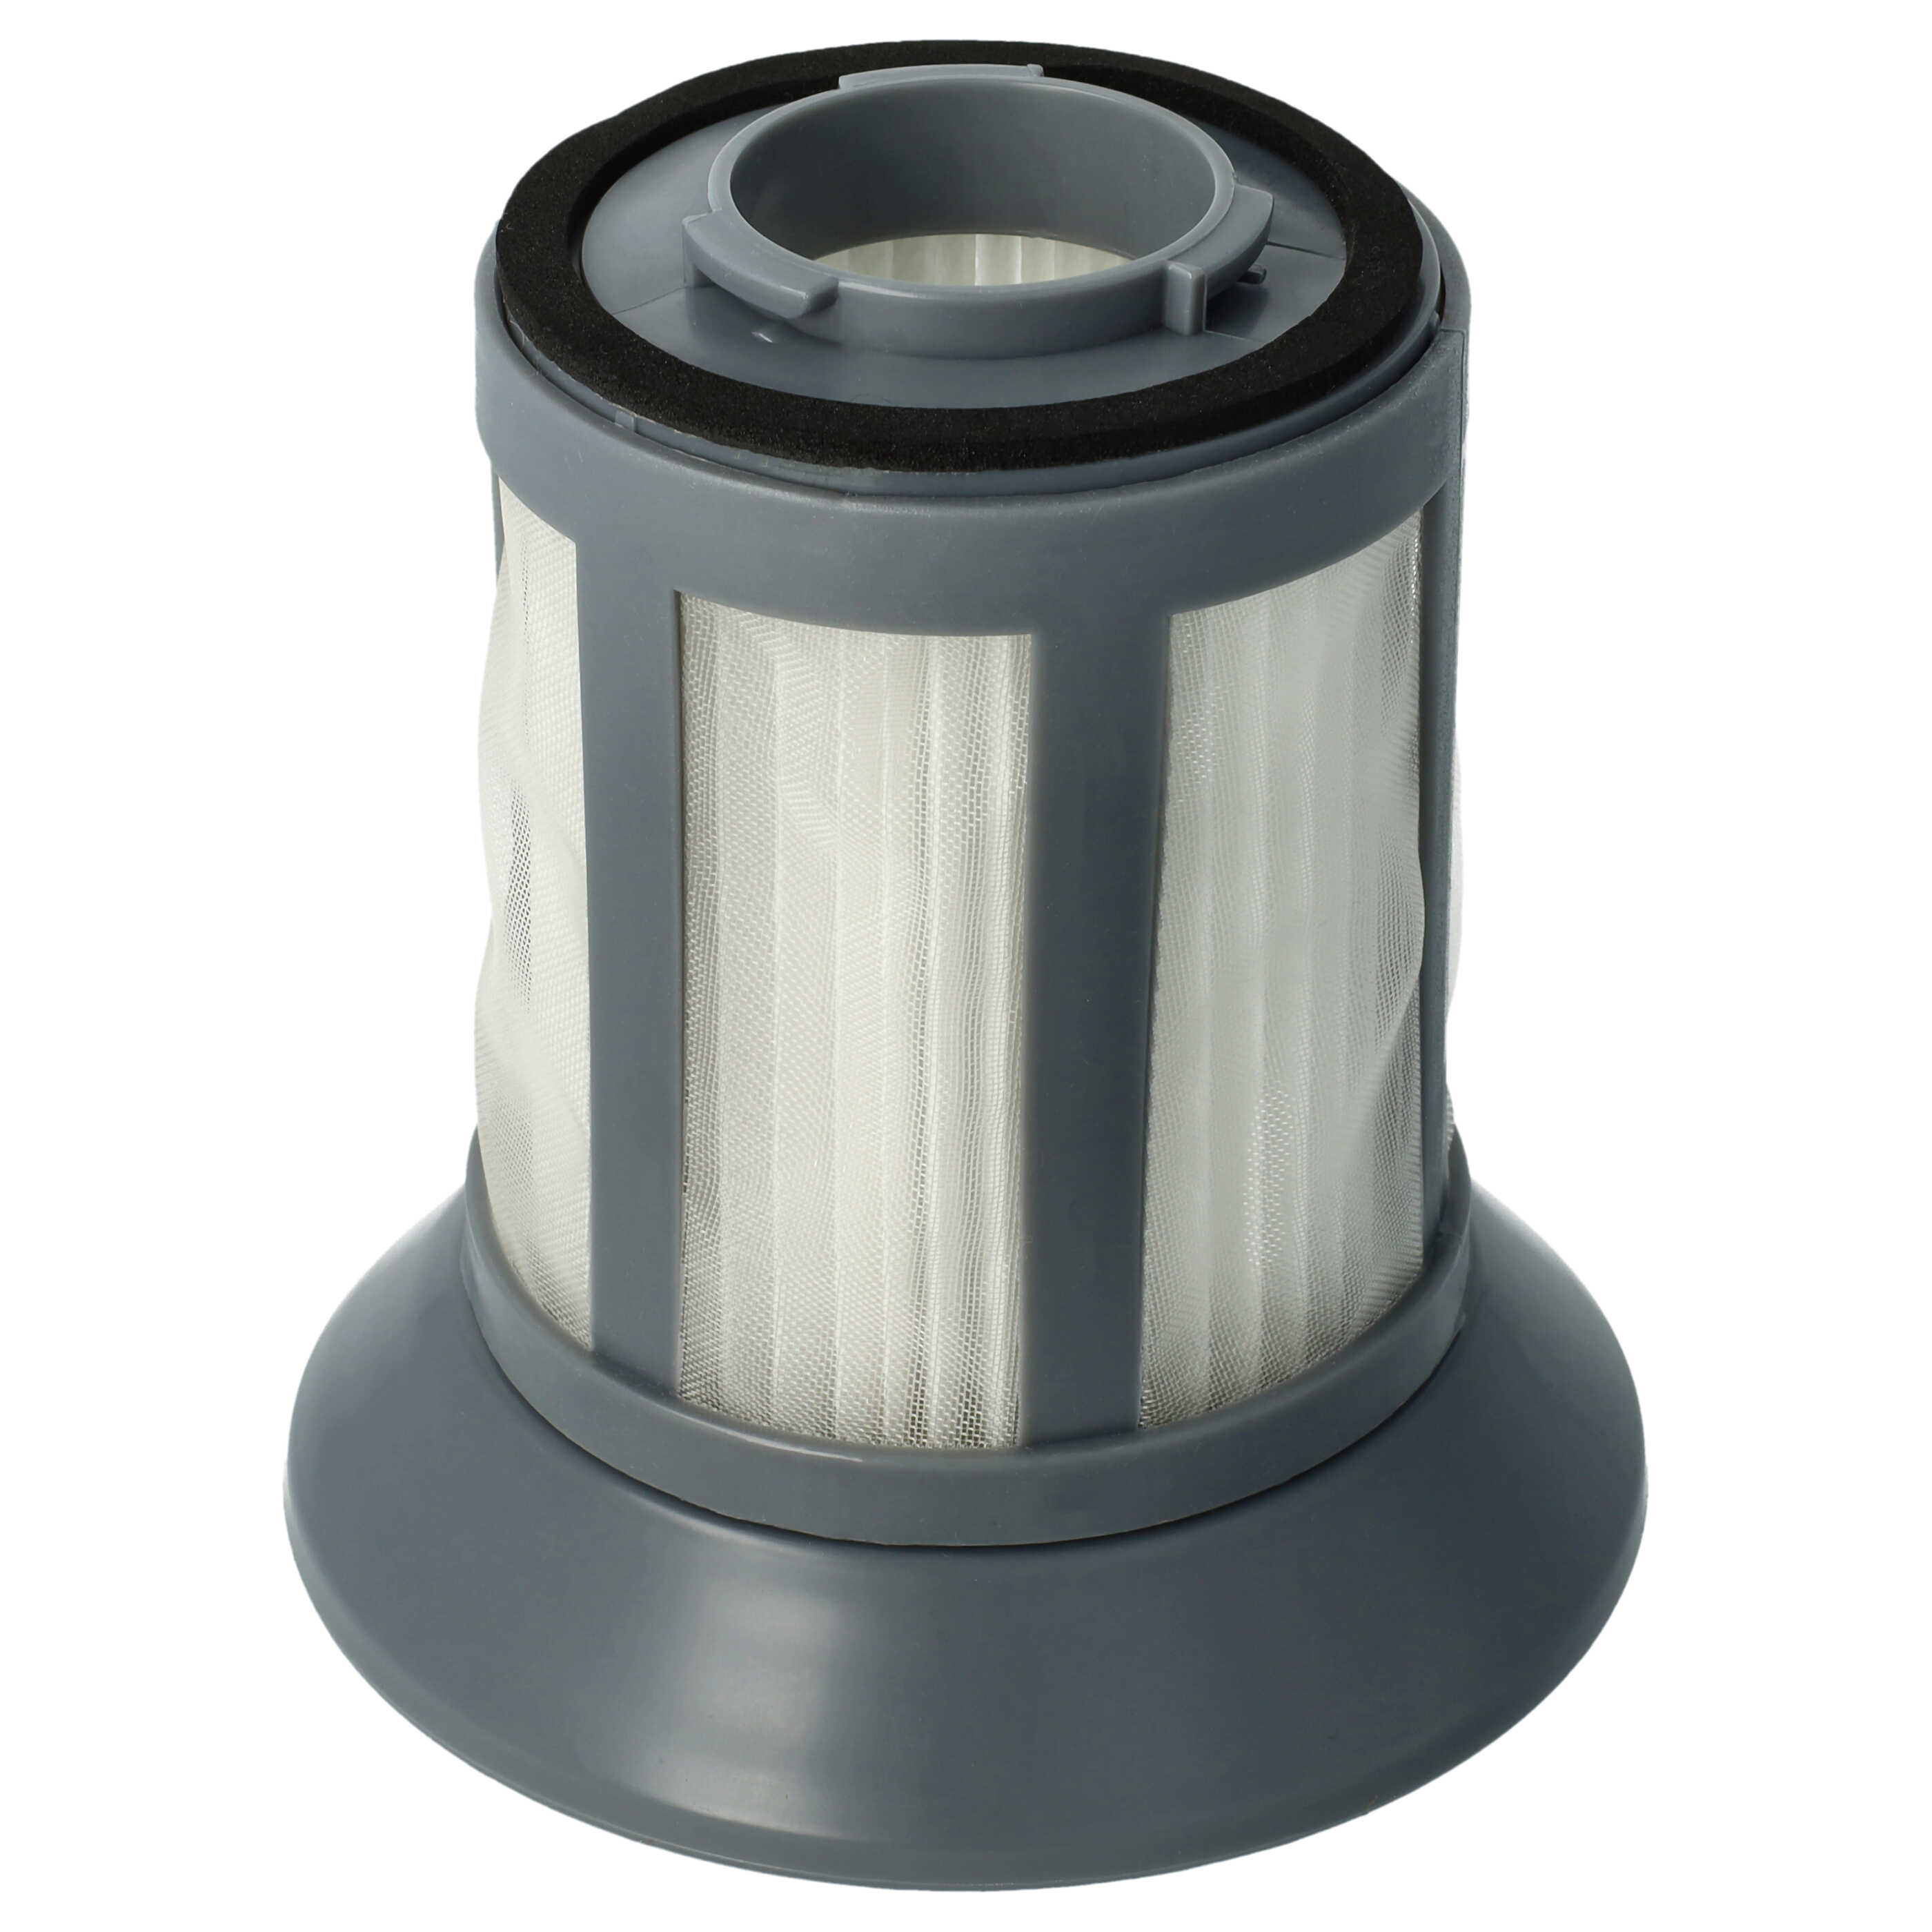 Filtro para aspiradora BS 9012 CB Eco Cyclon Bluesky, etc. - elemento filtrante (filtro nailon + filtro HEPA) 